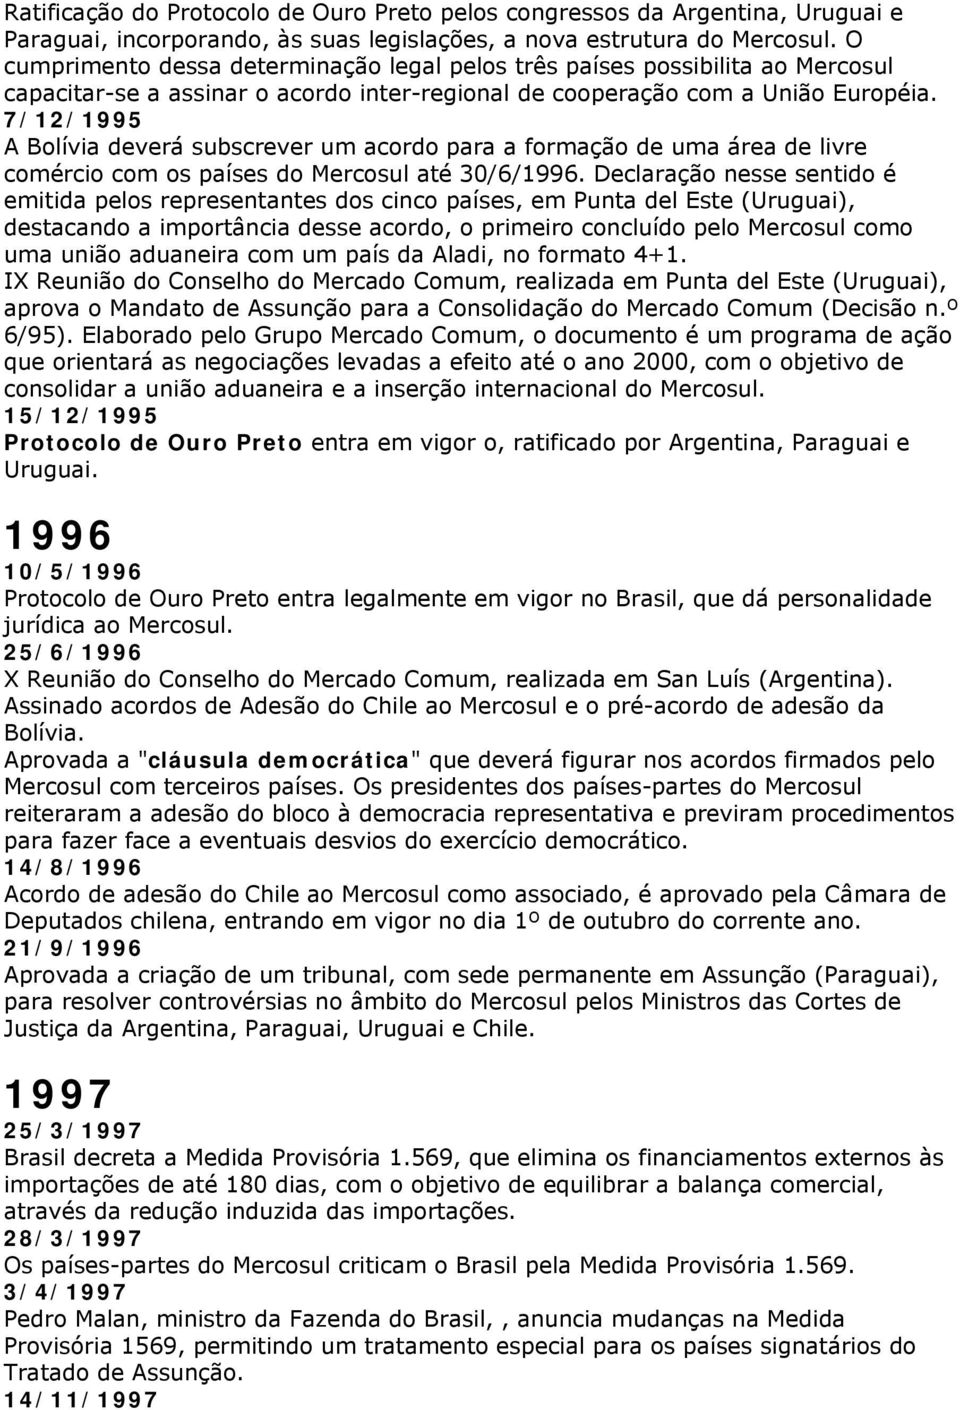 7/12/1995 A Bolívia deverá subscrever um acordo para a formação de uma área de livre comércio com os países do Mercosul até 30/6/1996.